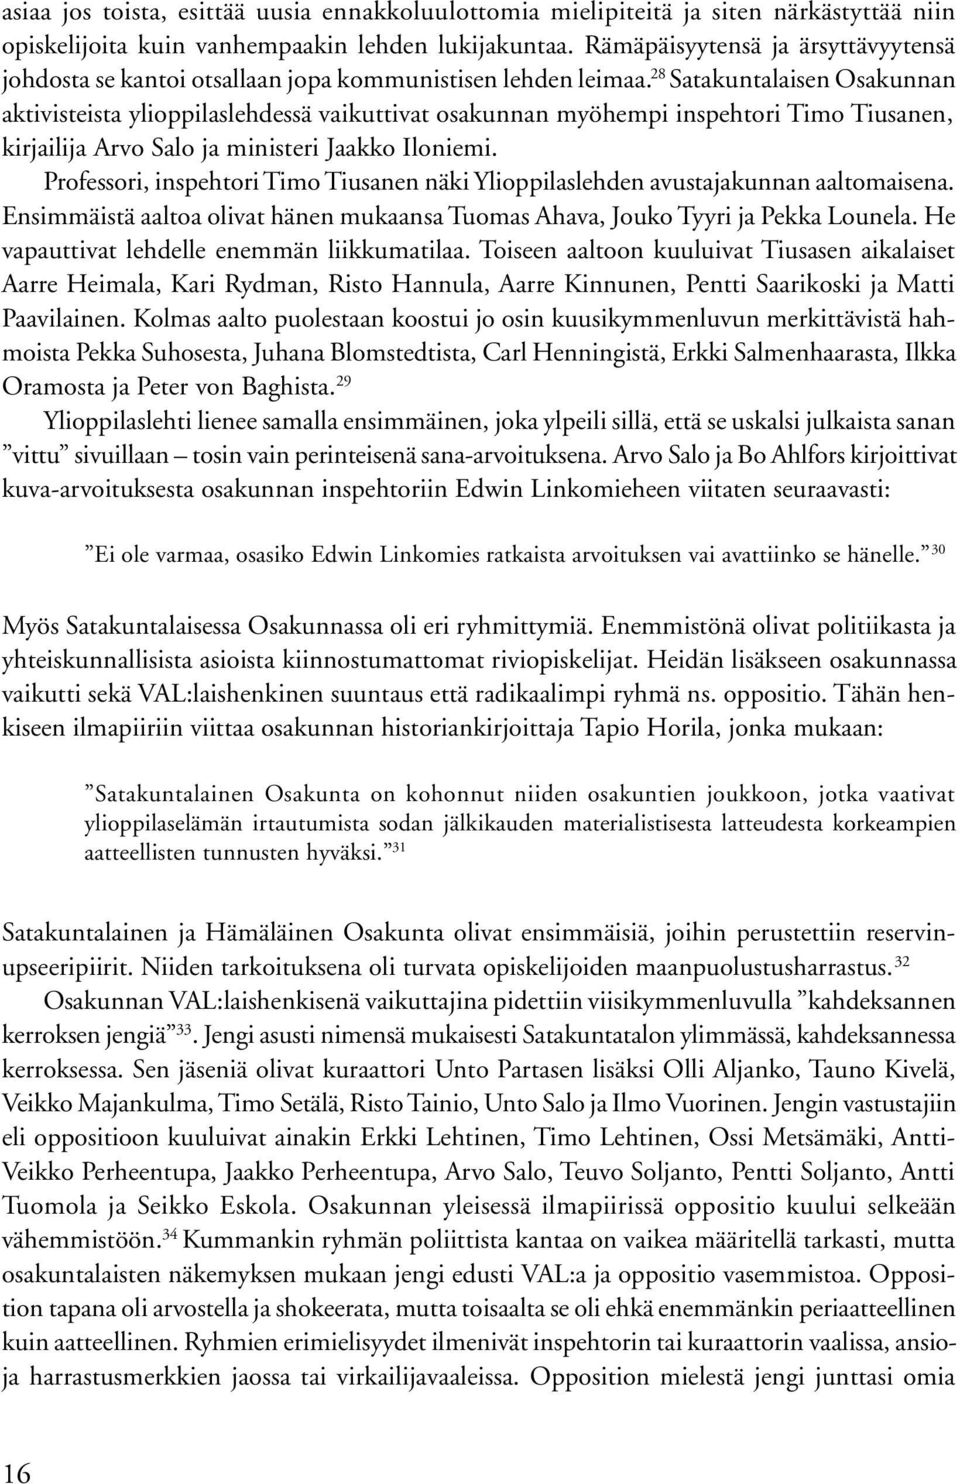 28 Satakuntalaisen Osakunnan aktivisteista ylioppilaslehdessä vaikuttivat osakunnan myöhempi inspehtori Timo Tiusanen, kirjailija Arvo Salo ja ministeri Jaakko Iloniemi.